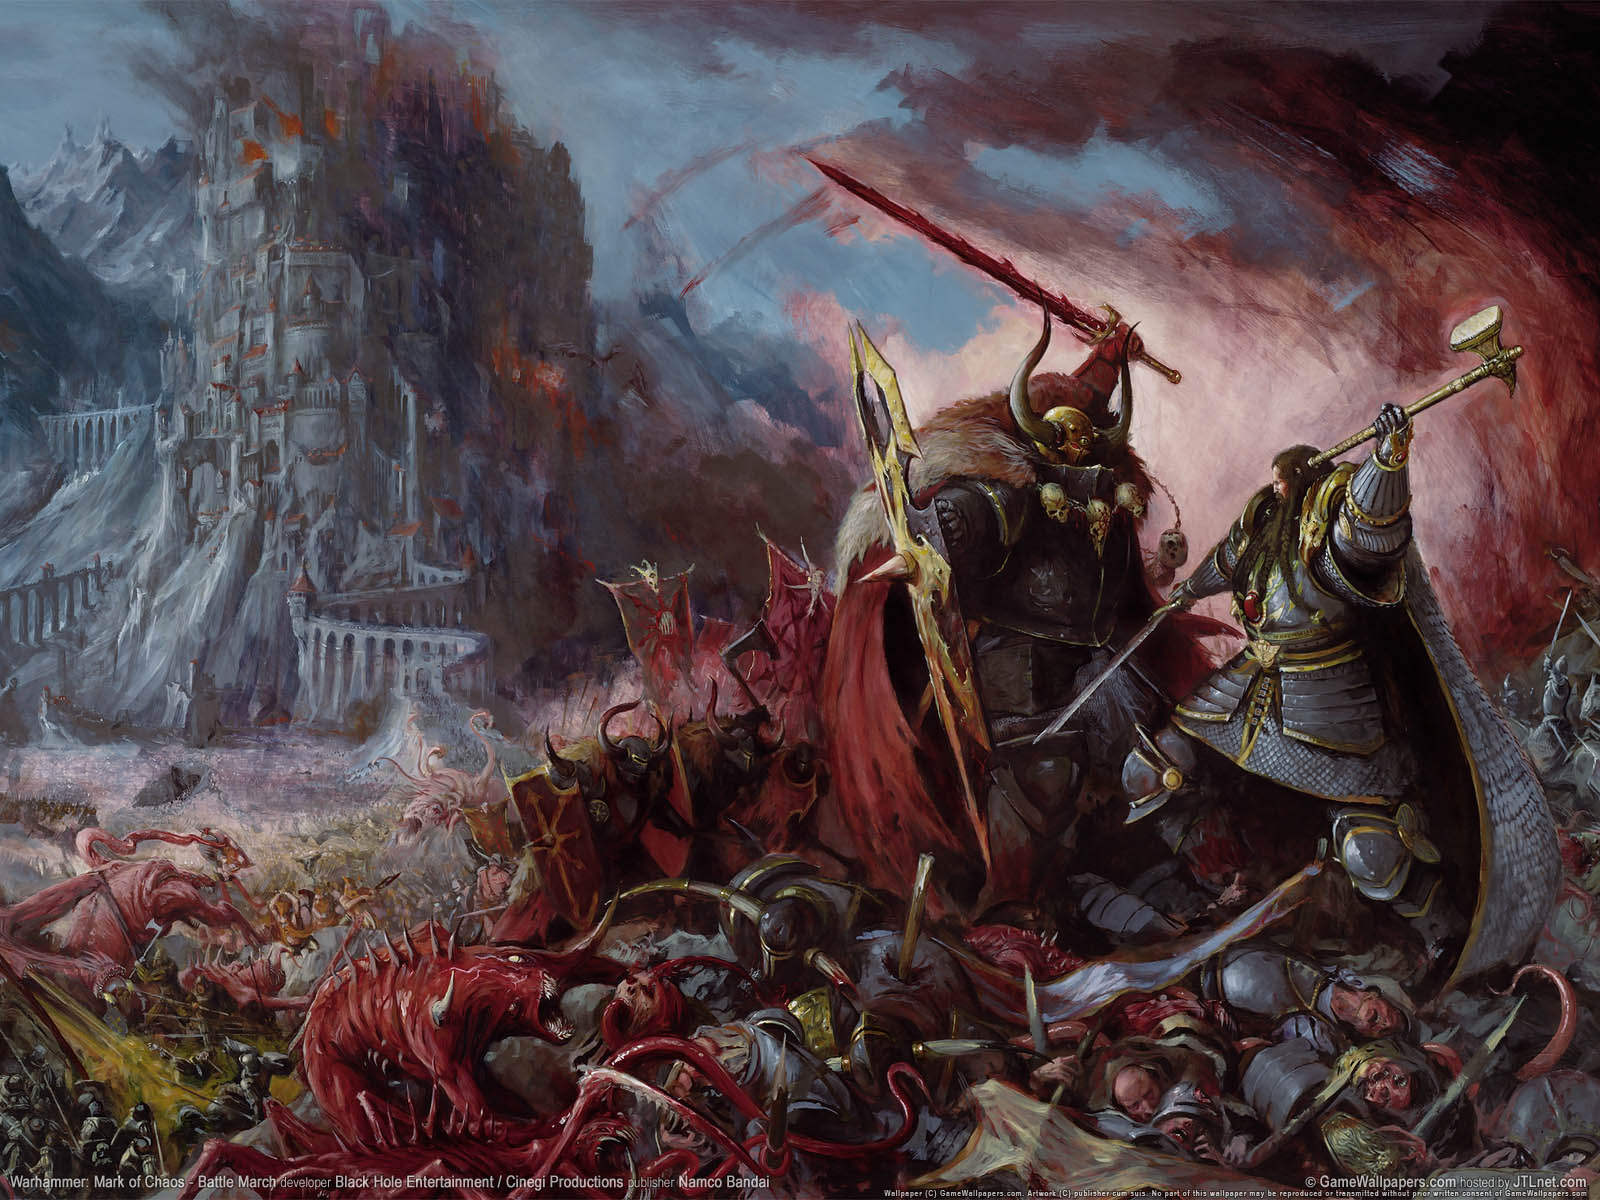 Warhammer: Mark of Chaos - Battle March fond d'cran 02 1600x1200